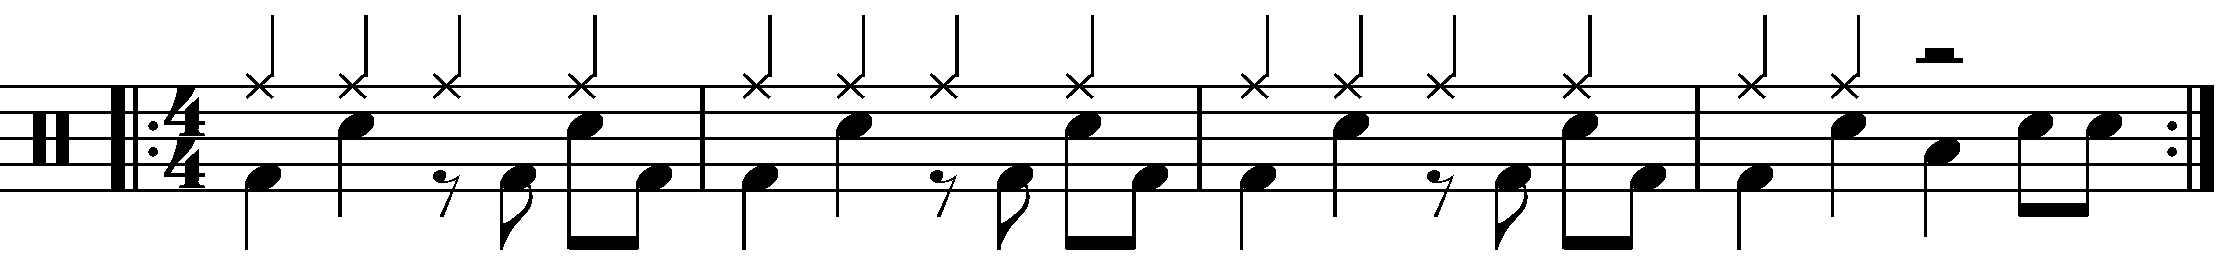 A four bar phrase using half bar mixed rhythm fills.